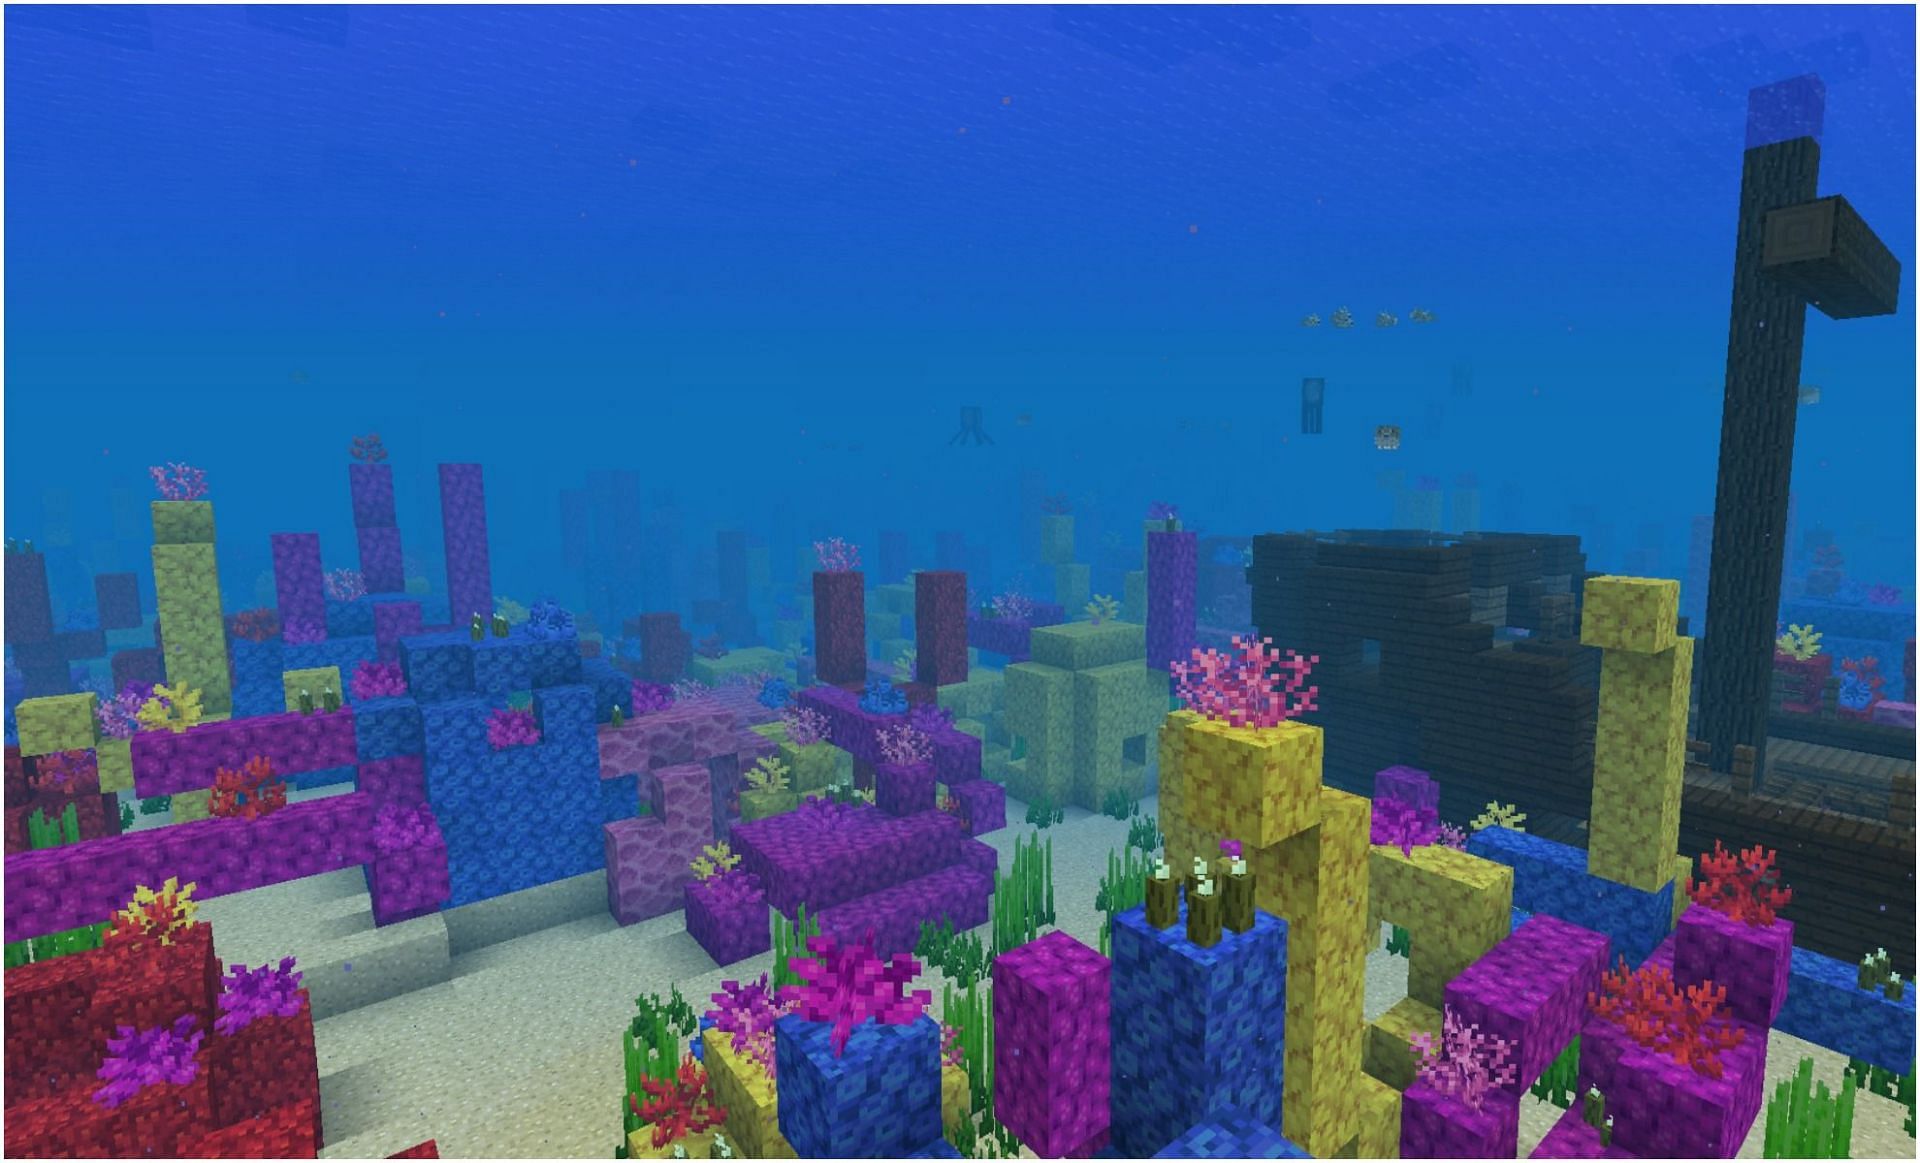 An Ocean in Minecraft (Image via Minecraft)